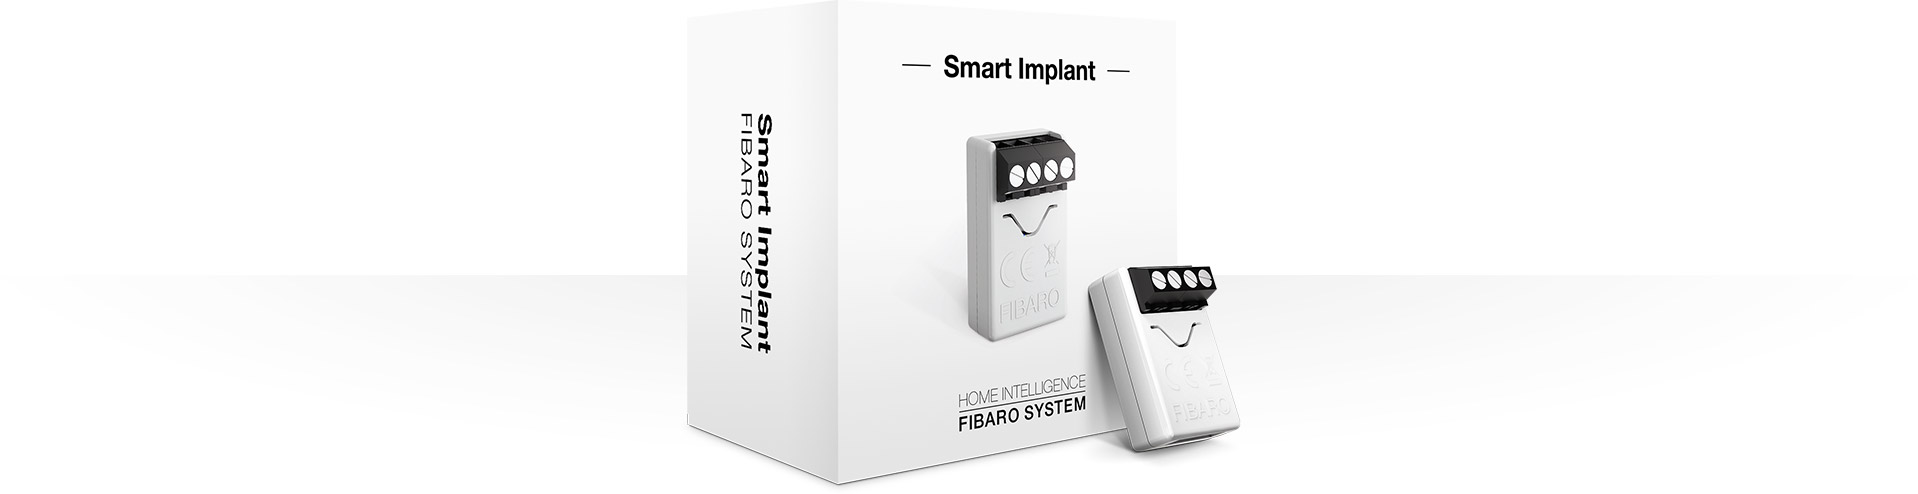 Smart Implant